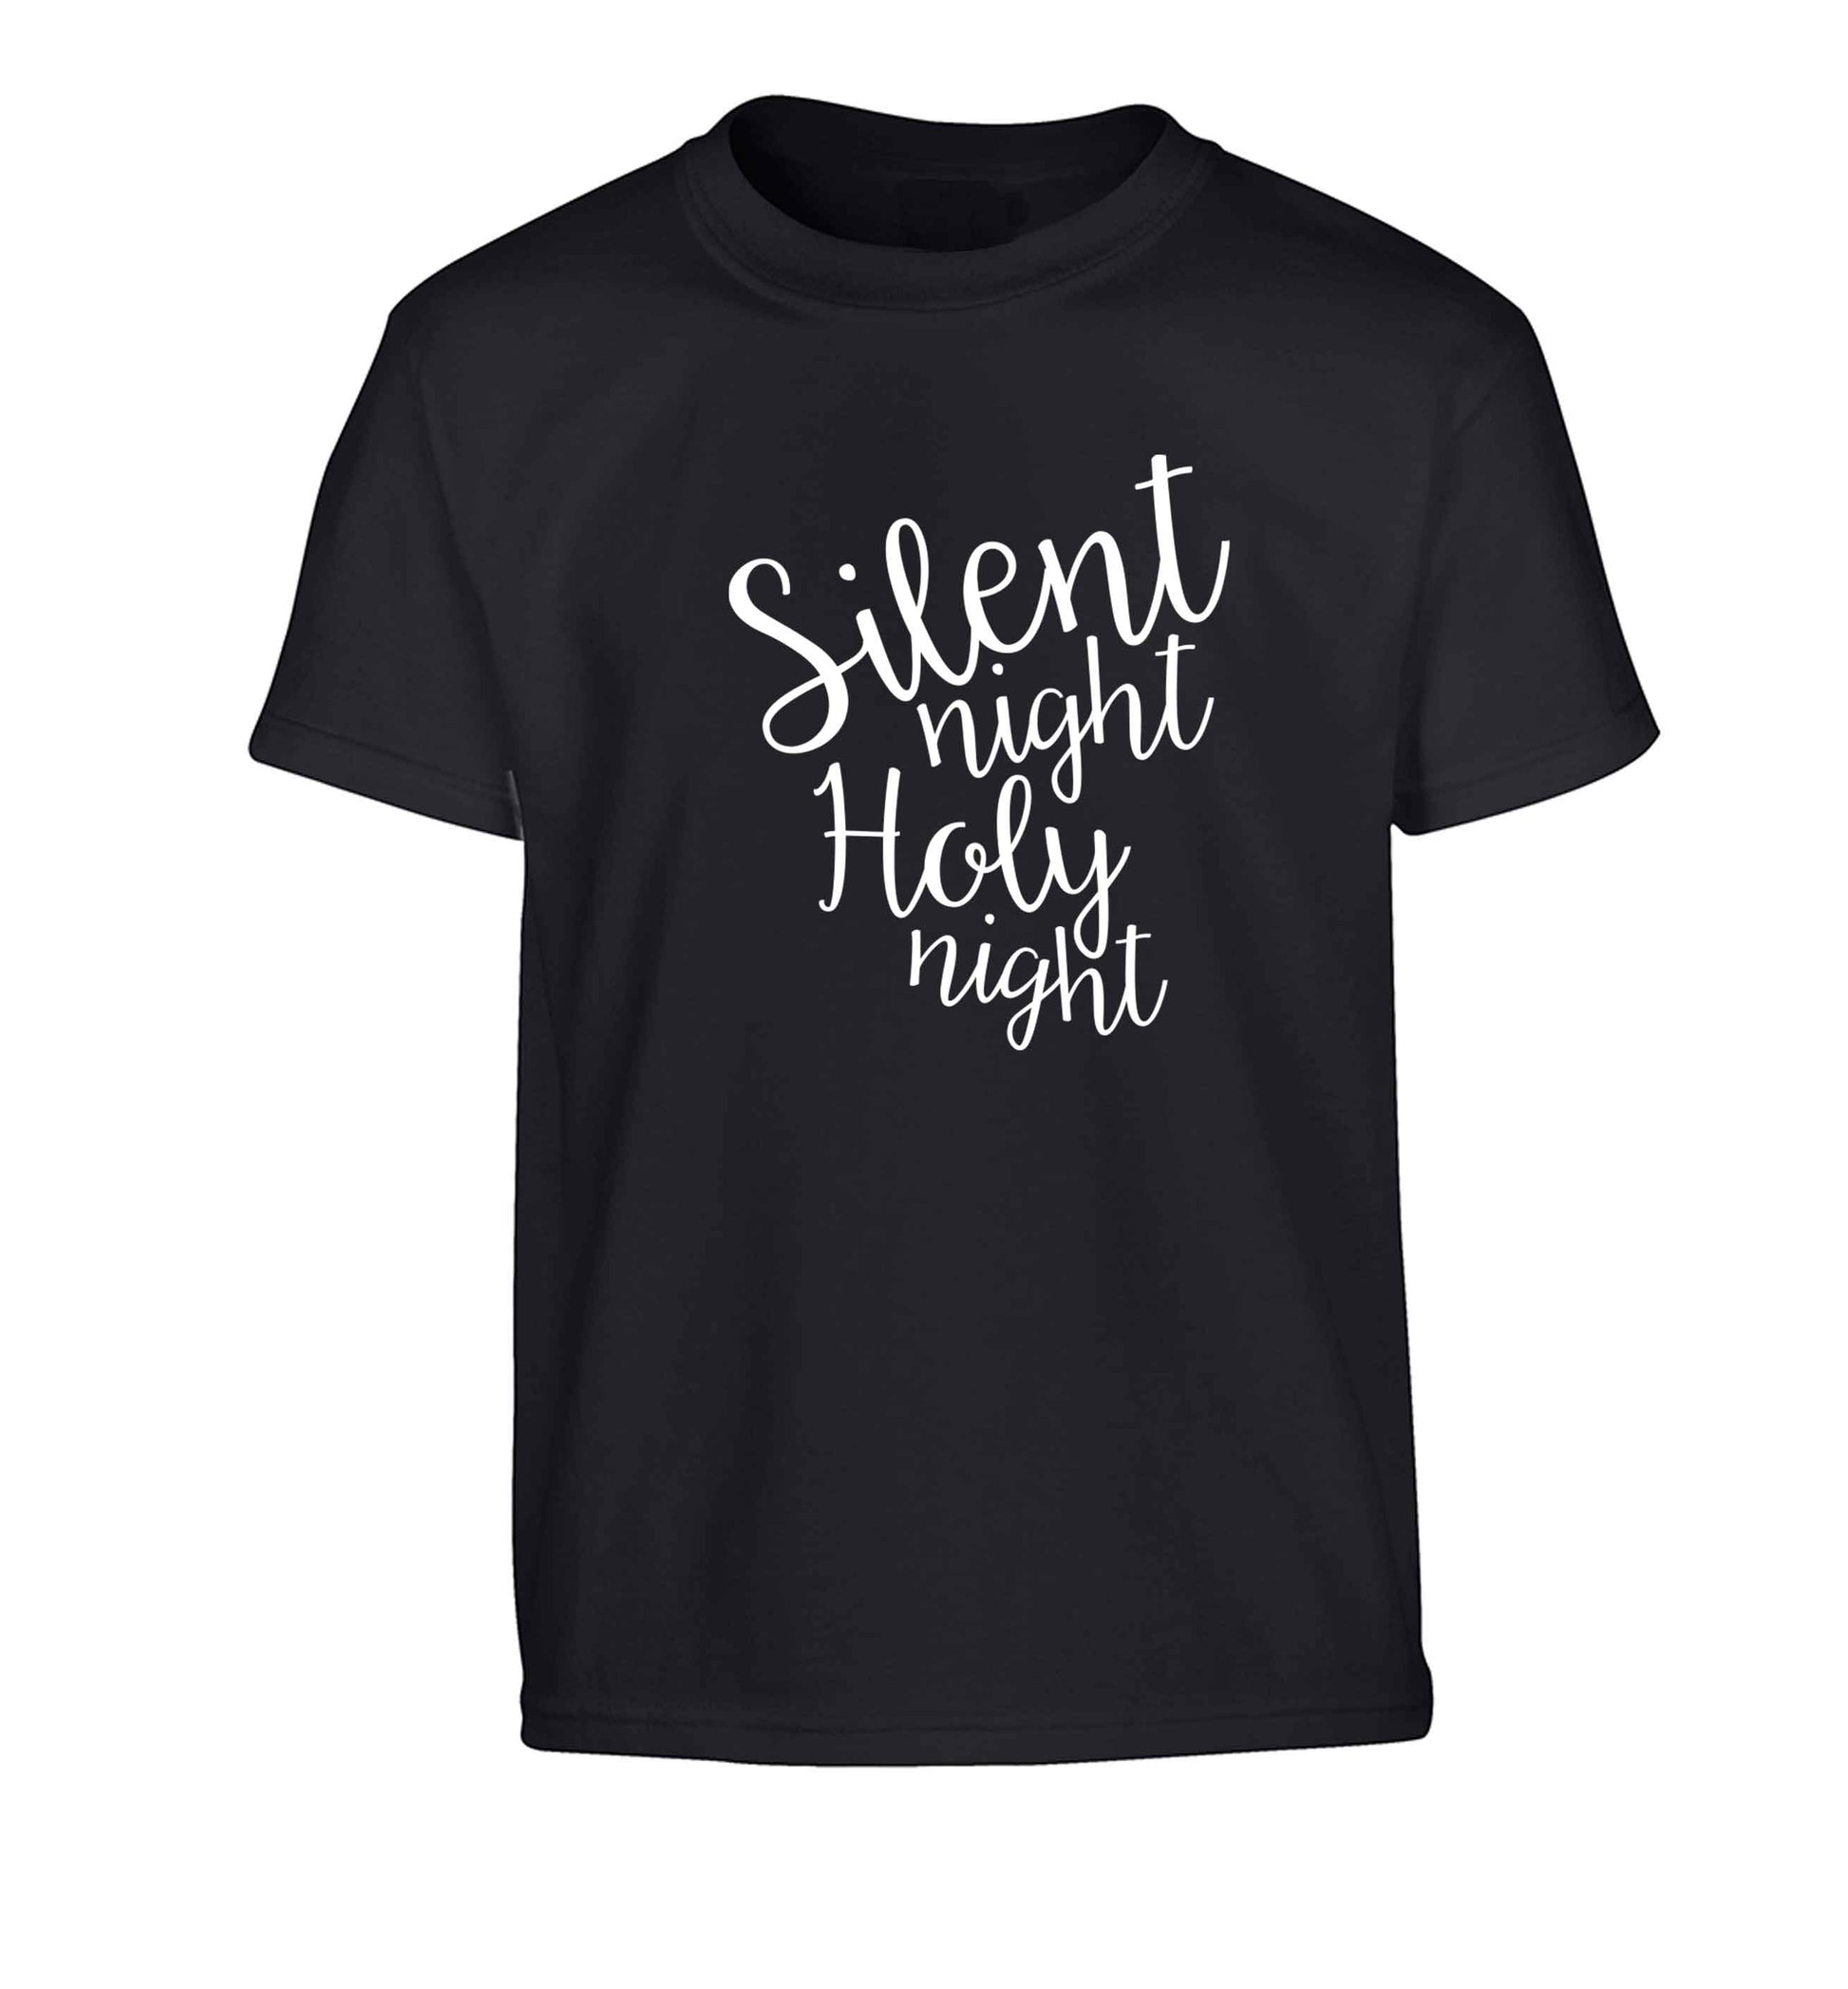 Silent night holy night Children's black Tshirt 12-13 Years